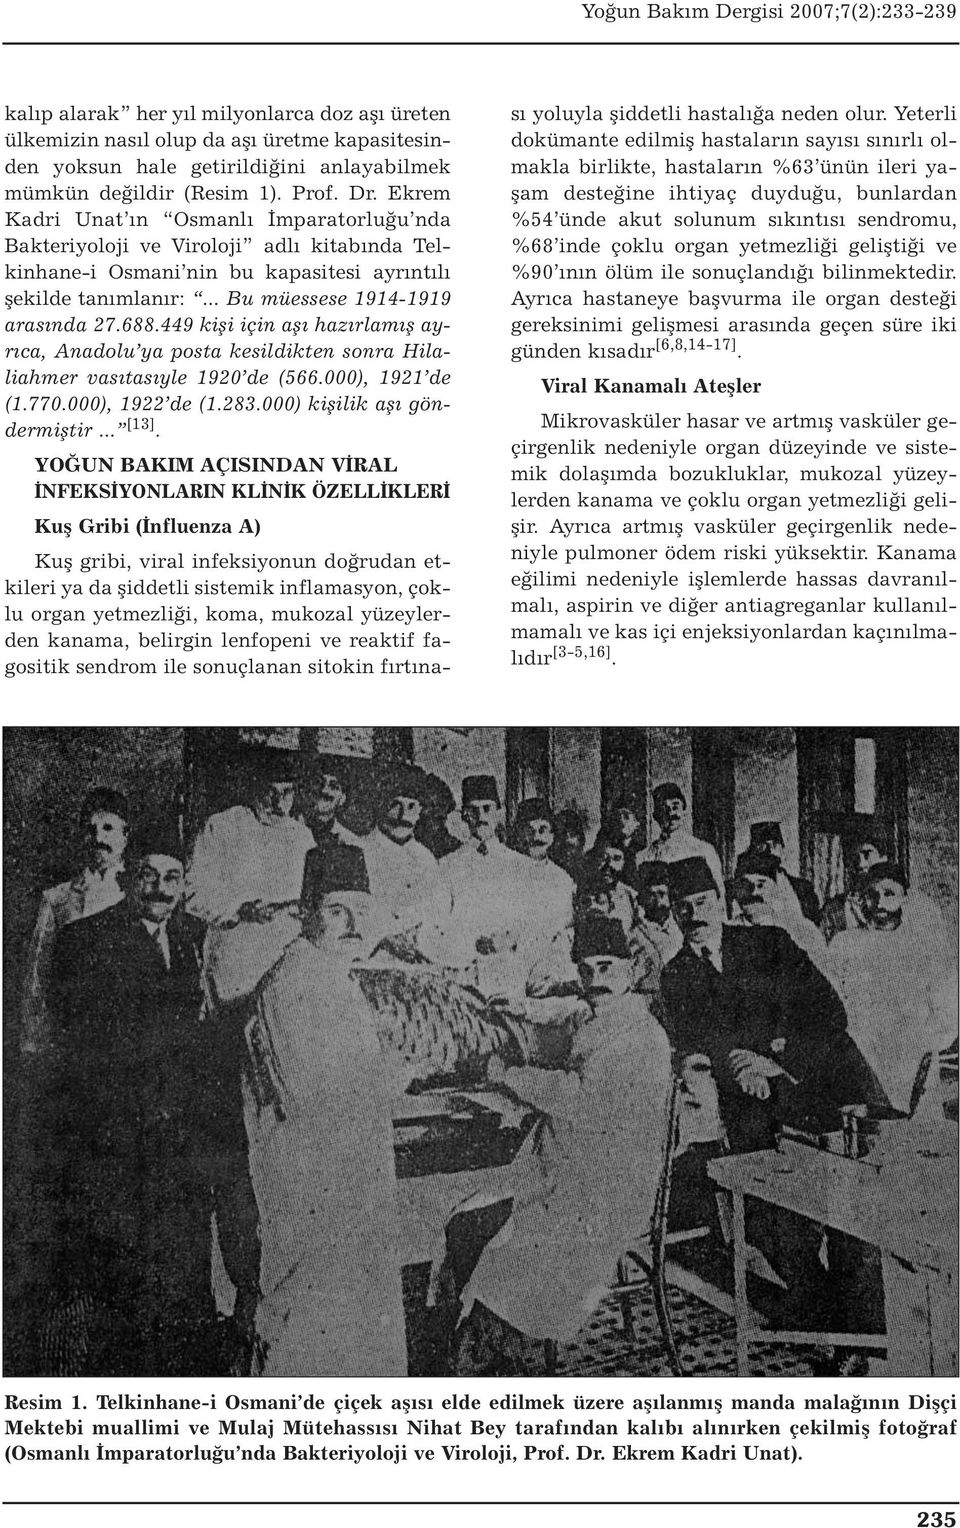 449 kişi için aşı hazırlamış ayrıca, Anadolu ya posta kesildikten sonra Hilaliahmer vasıtasıyle 1920 de (566.000), 1921 de (1.770.000), 1922 de (1.283.000) kişilik aşı göndermiştir... [13].